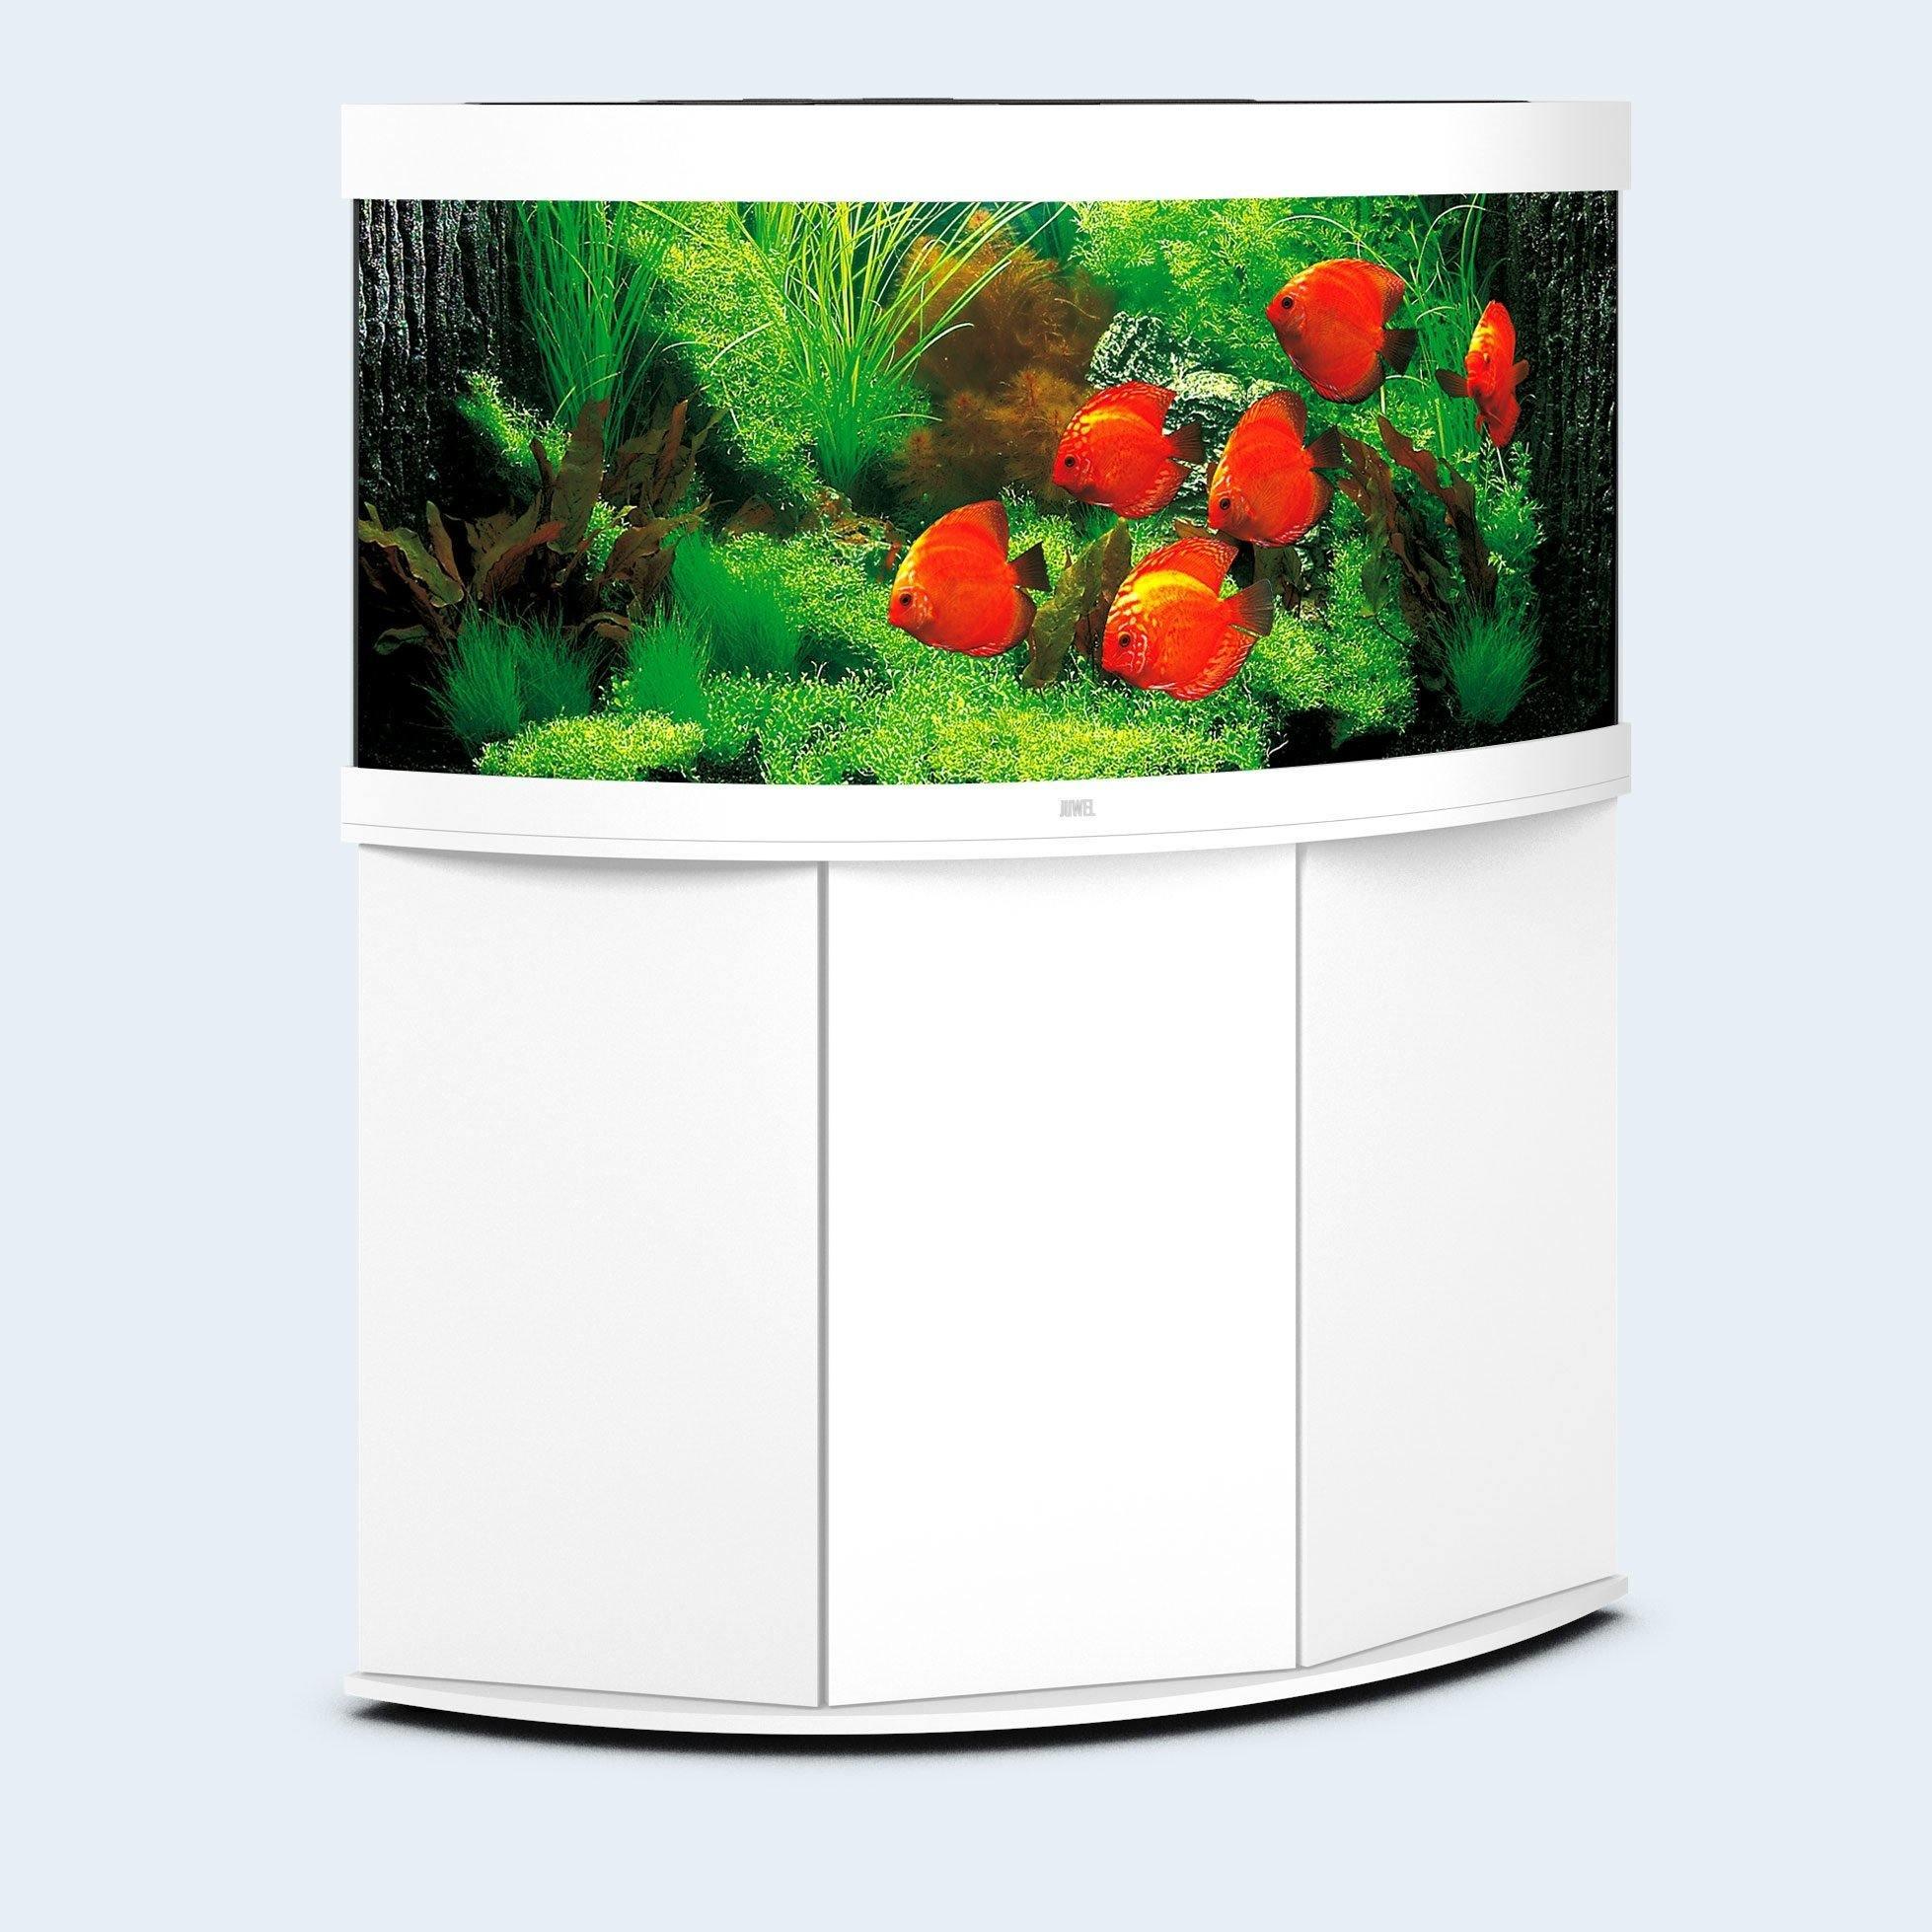 Juwel Trigon 350 LED Corner Aquarium and Cabinet - Amazing Amazon